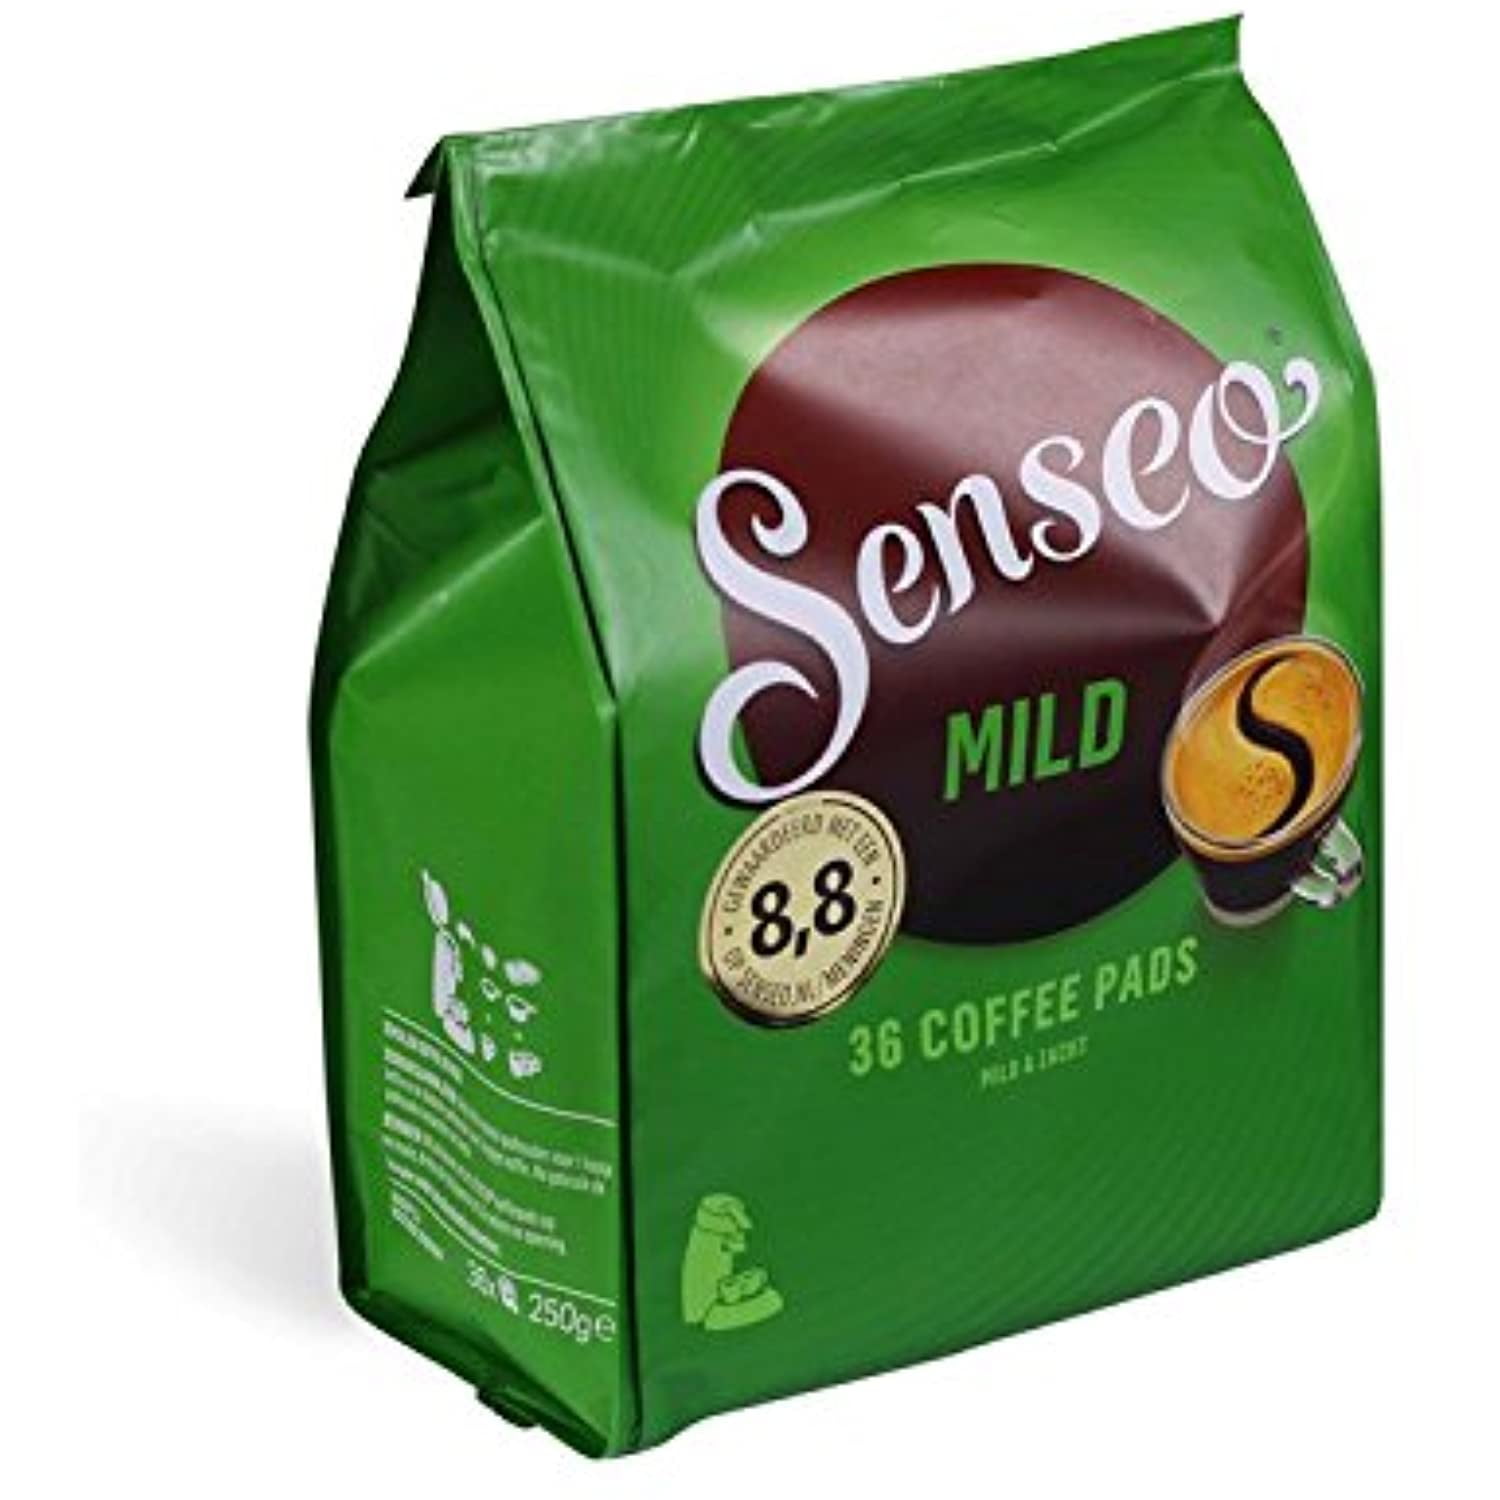 Douwe Egberts Café Senseo Mild 36 dosettes